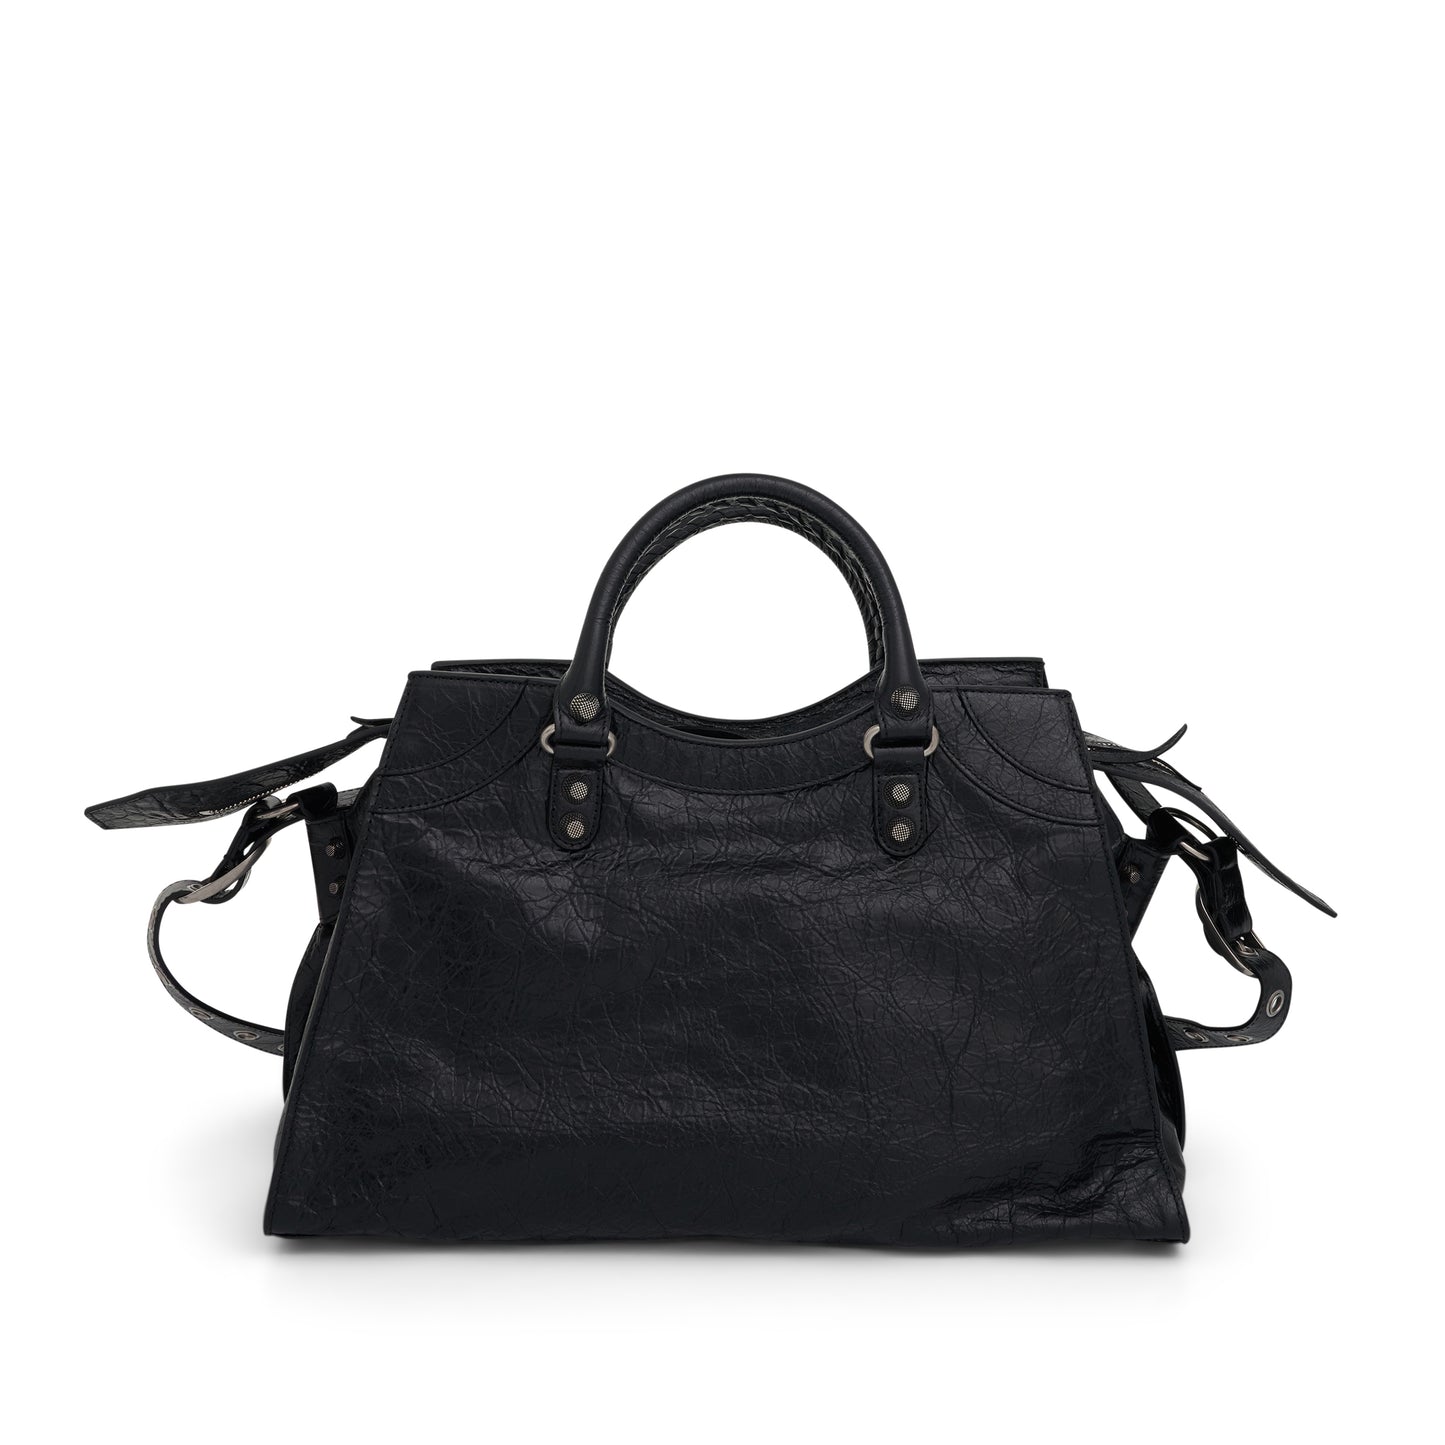 Neo Cagole City Handbag in Black